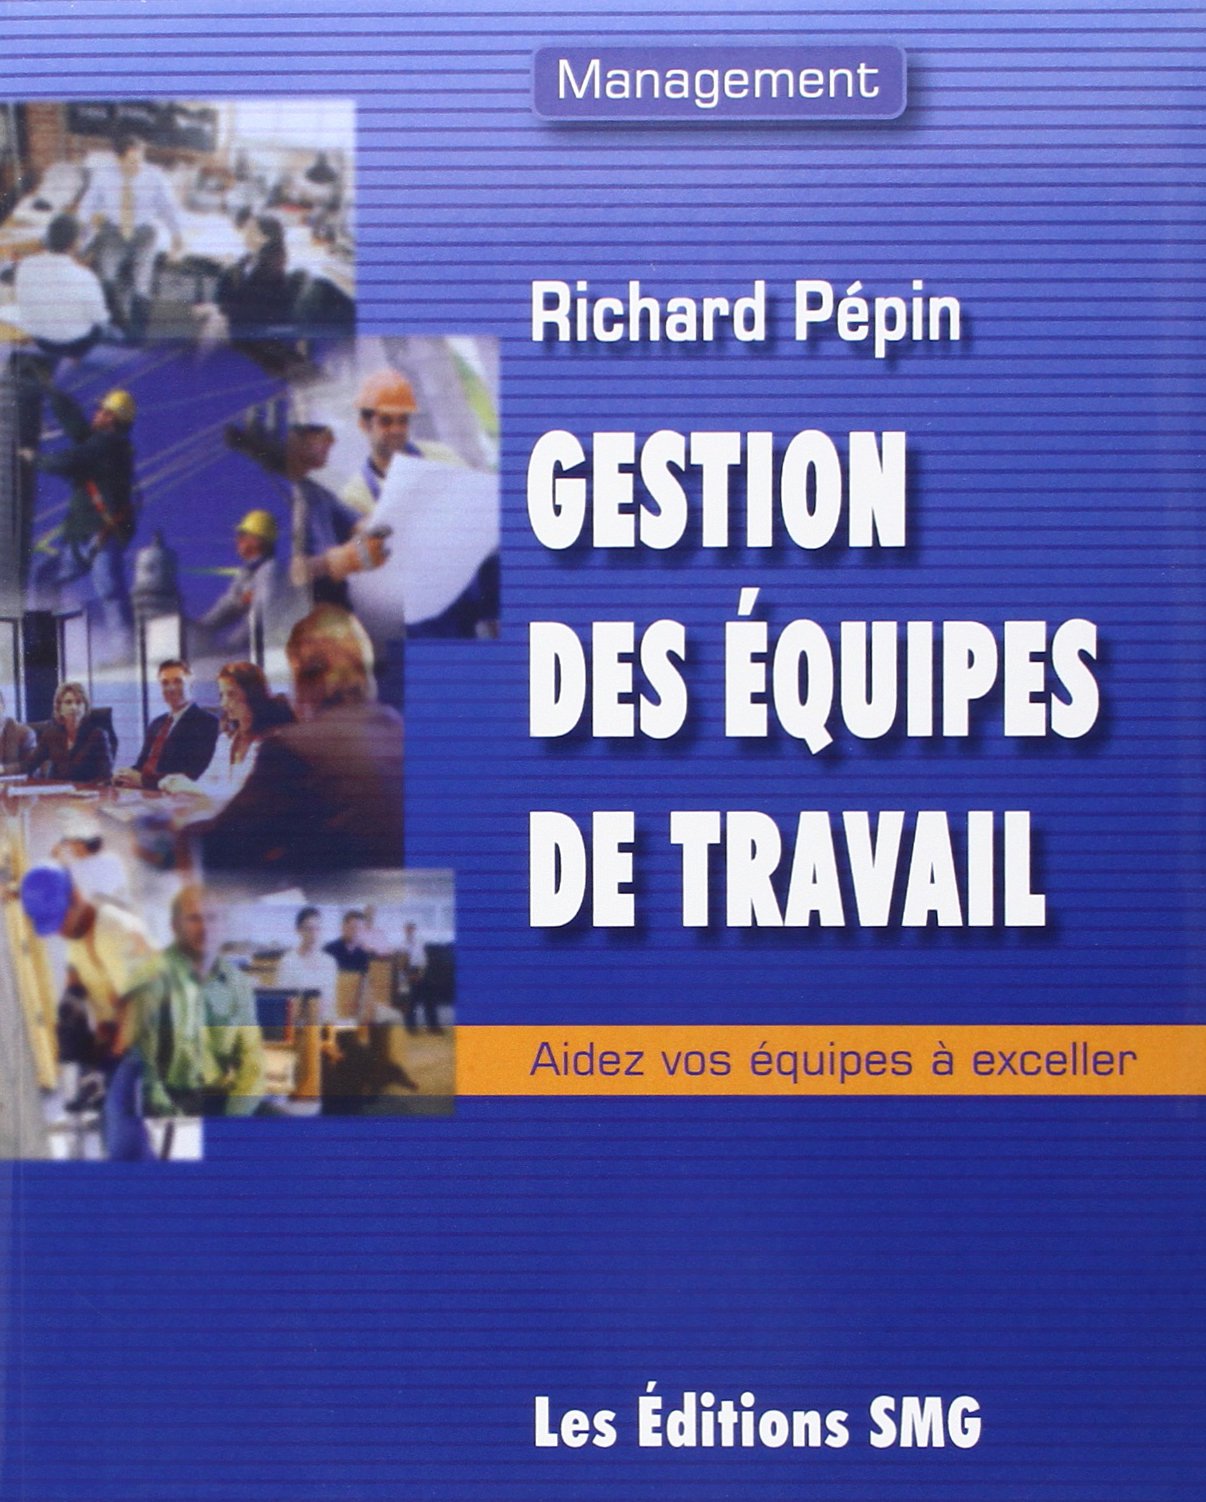 Livre ISBN 2890941949 Gestion des équipes de travail : Aidez vos équipes à exceller (Richard Pépin)